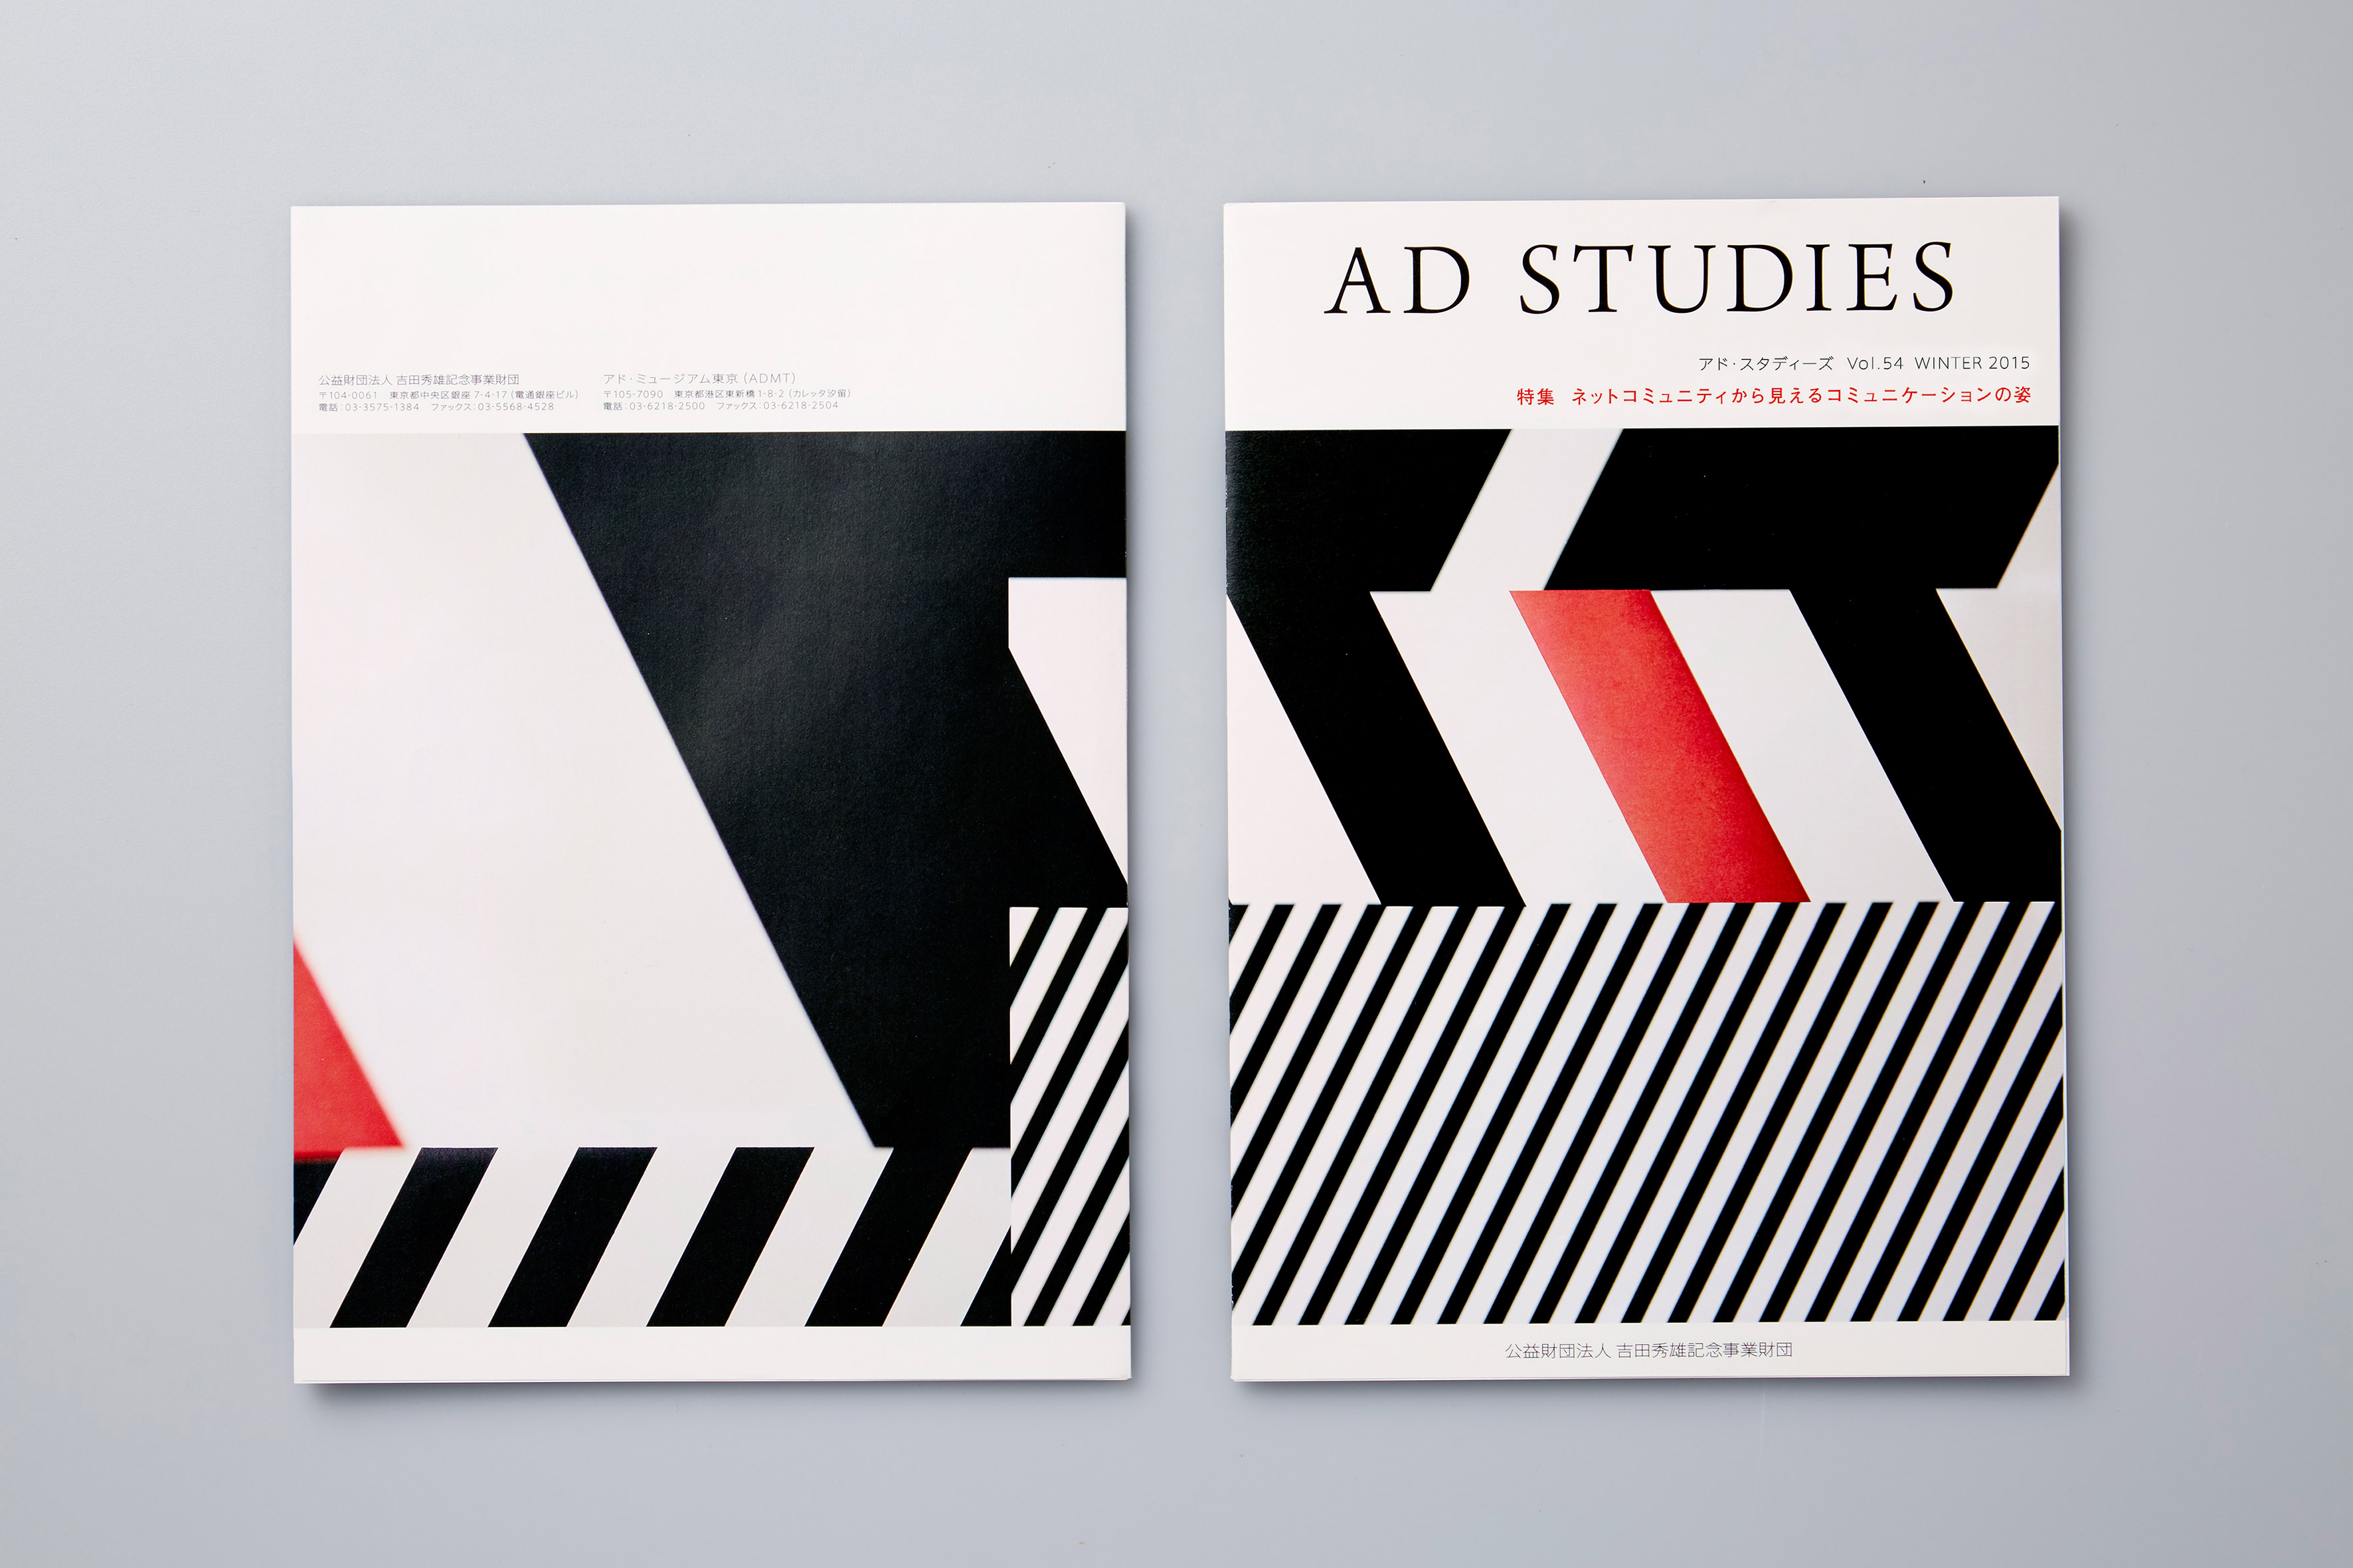 Studies of Graphic Design